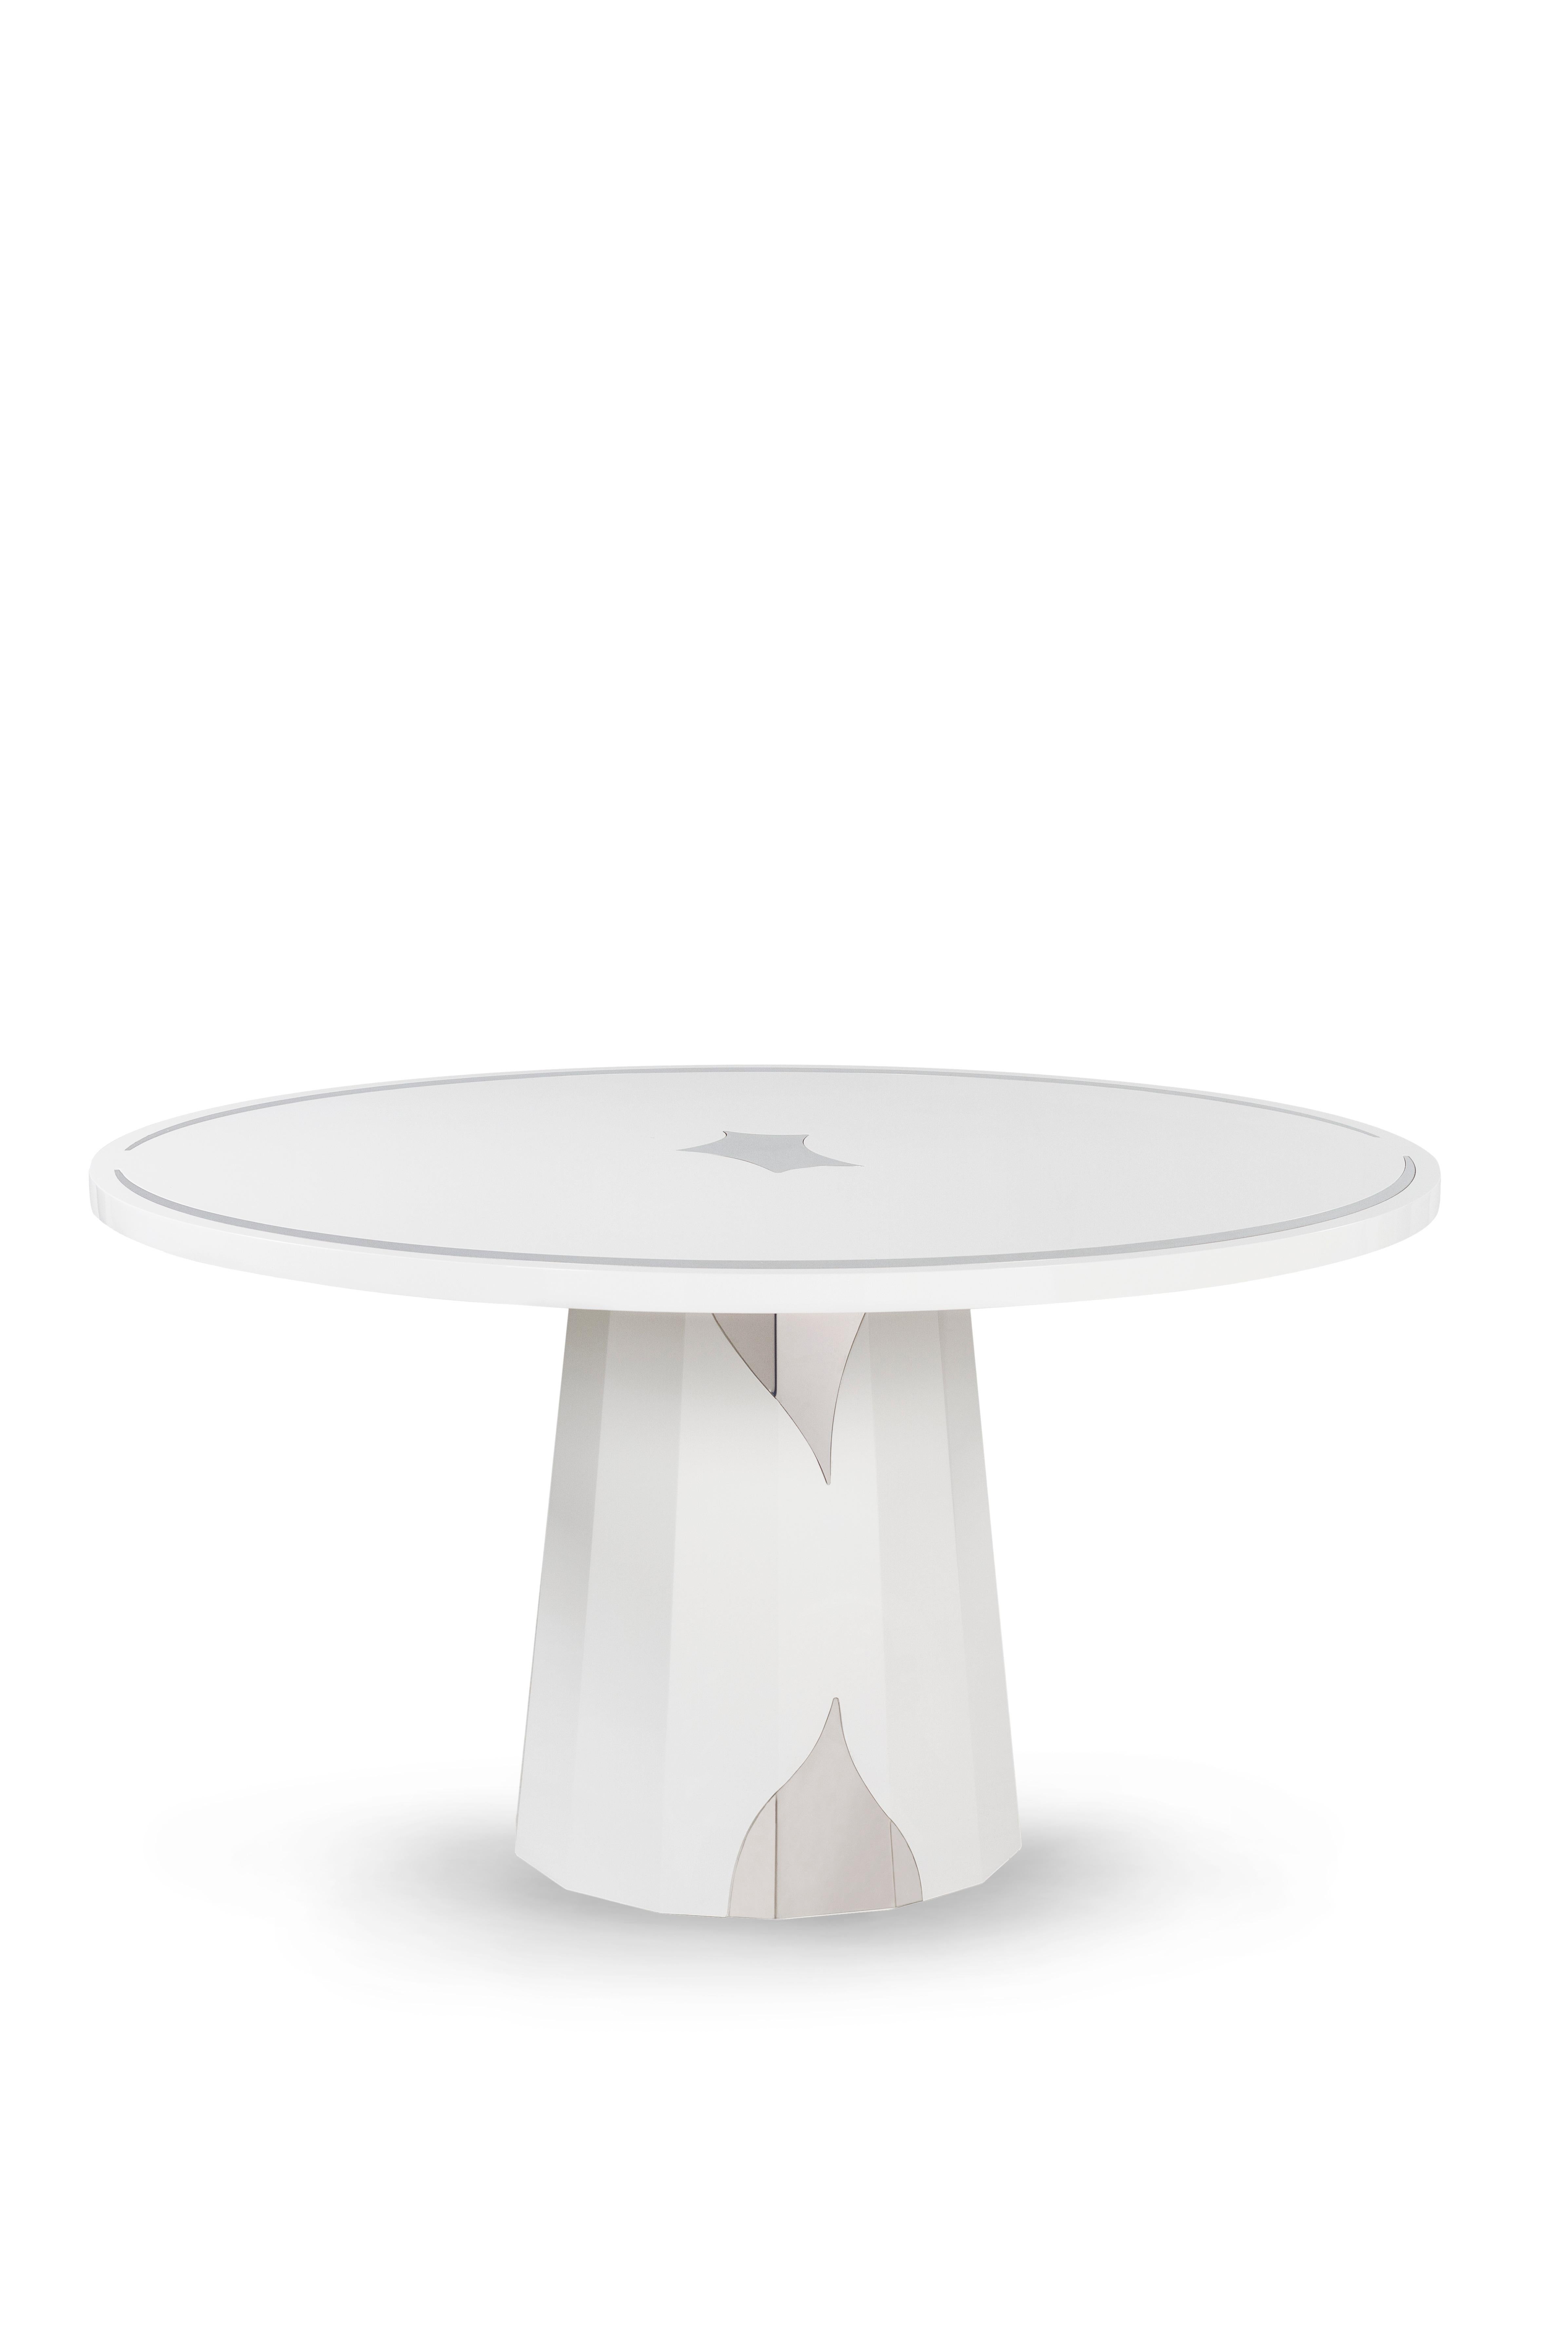 Howlite Dining Table 4-Seats, Collectional, Handcrafted in Portugal - Europe by GF Modern.

La table de salle à manger blanche Whiting représente l'aube d'une nouvelle ère moderne. Les détails de l'incrustation en acier inoxydable complètent le